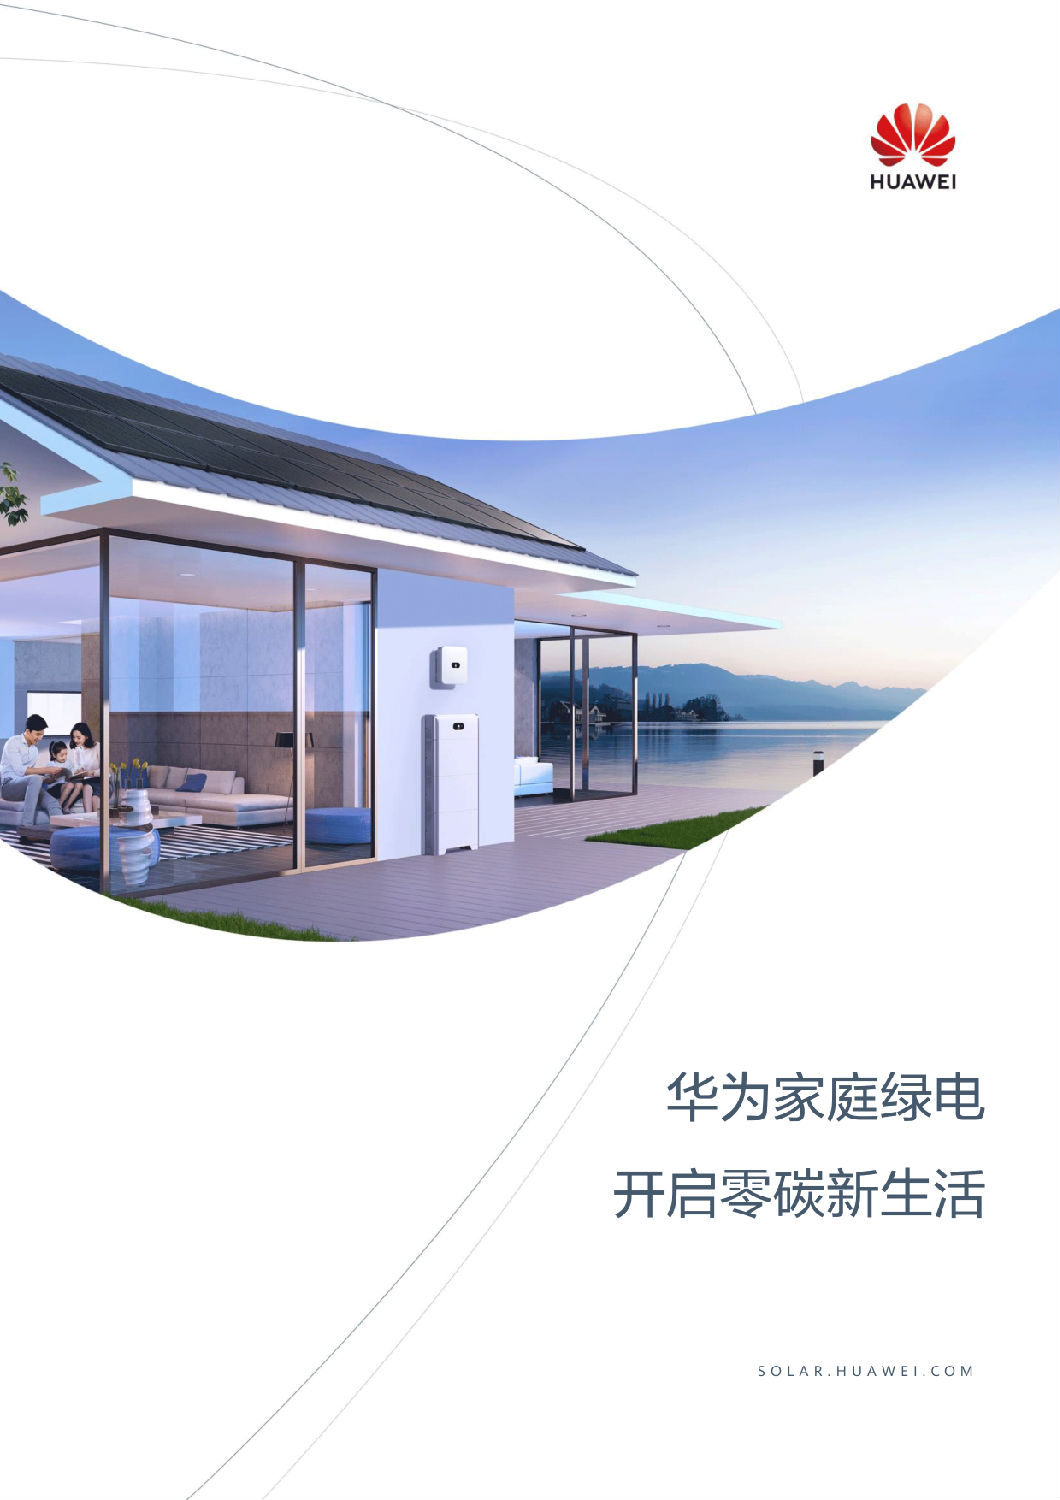 中国区家庭绿电解决方案宣传册-(20210316)-1.png